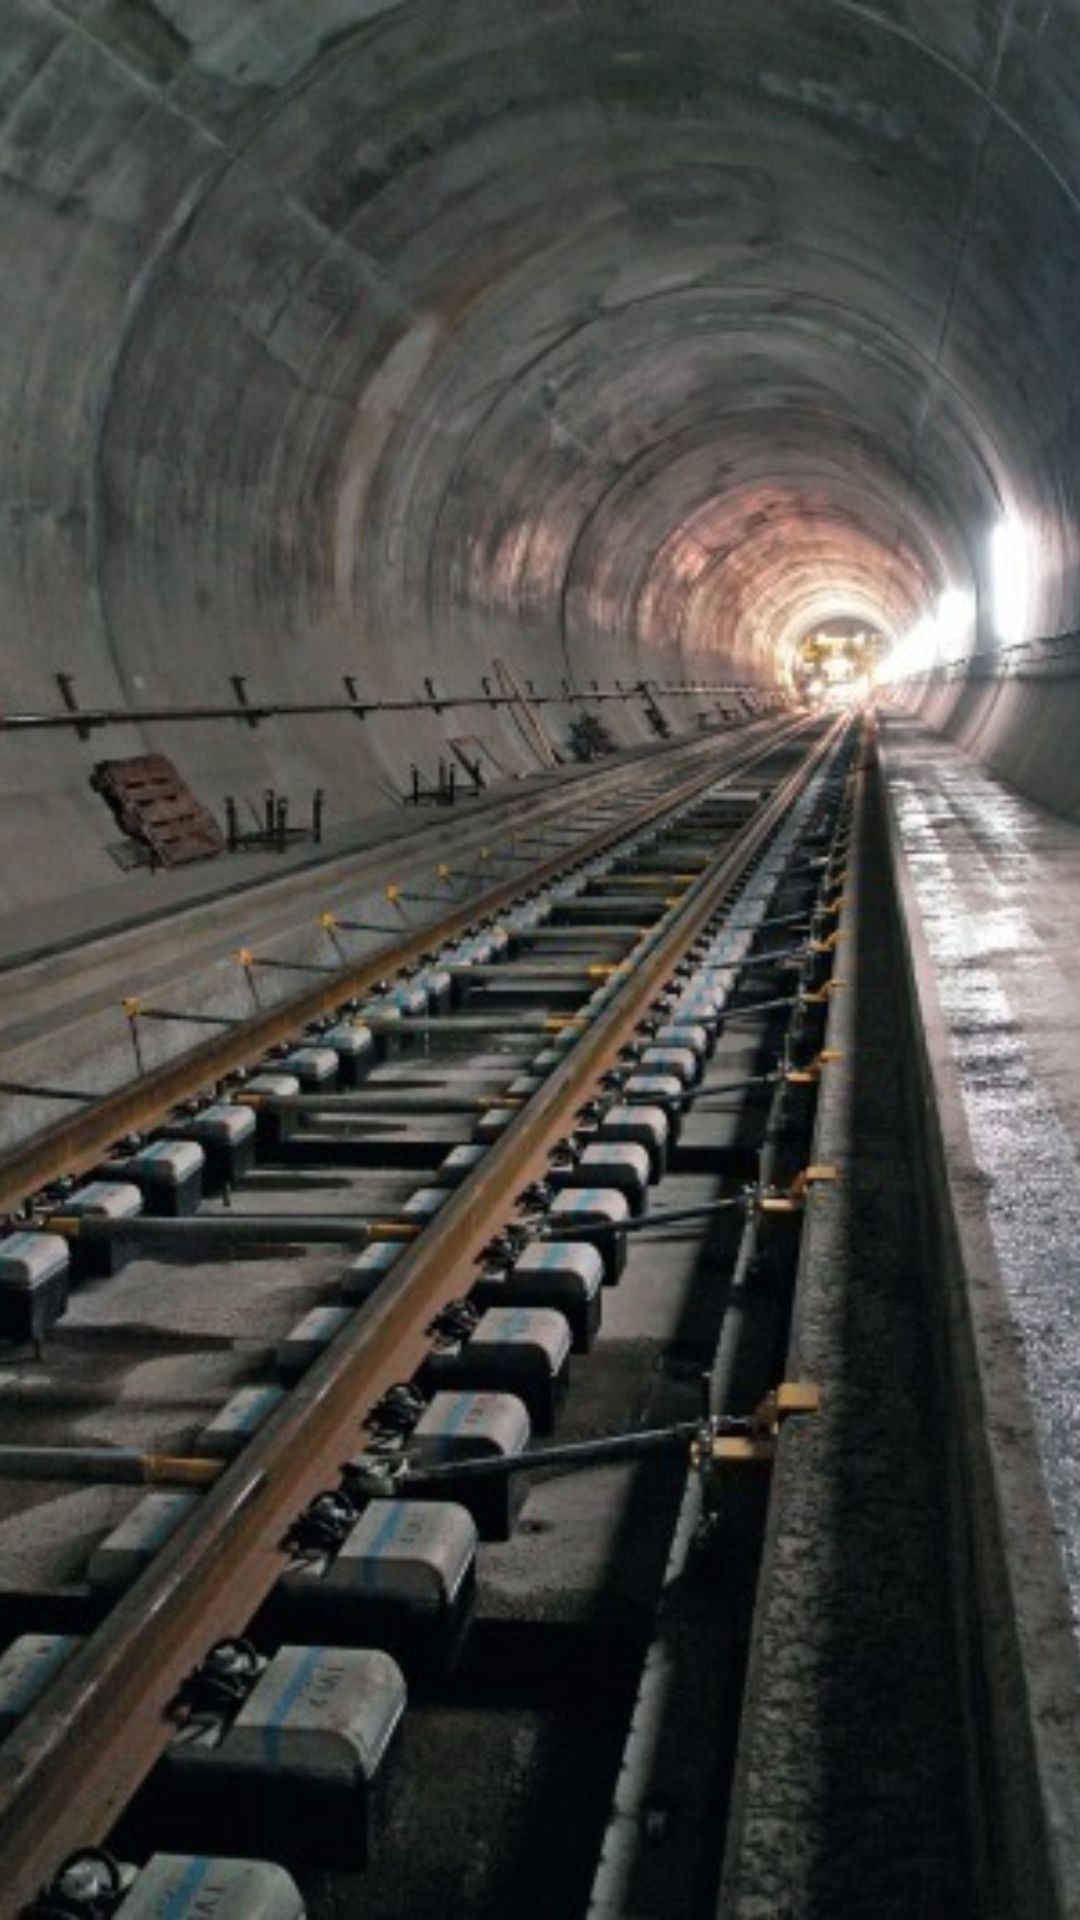 दुनिया की सबसे लंबी रेलवे सुरंग कहां है?